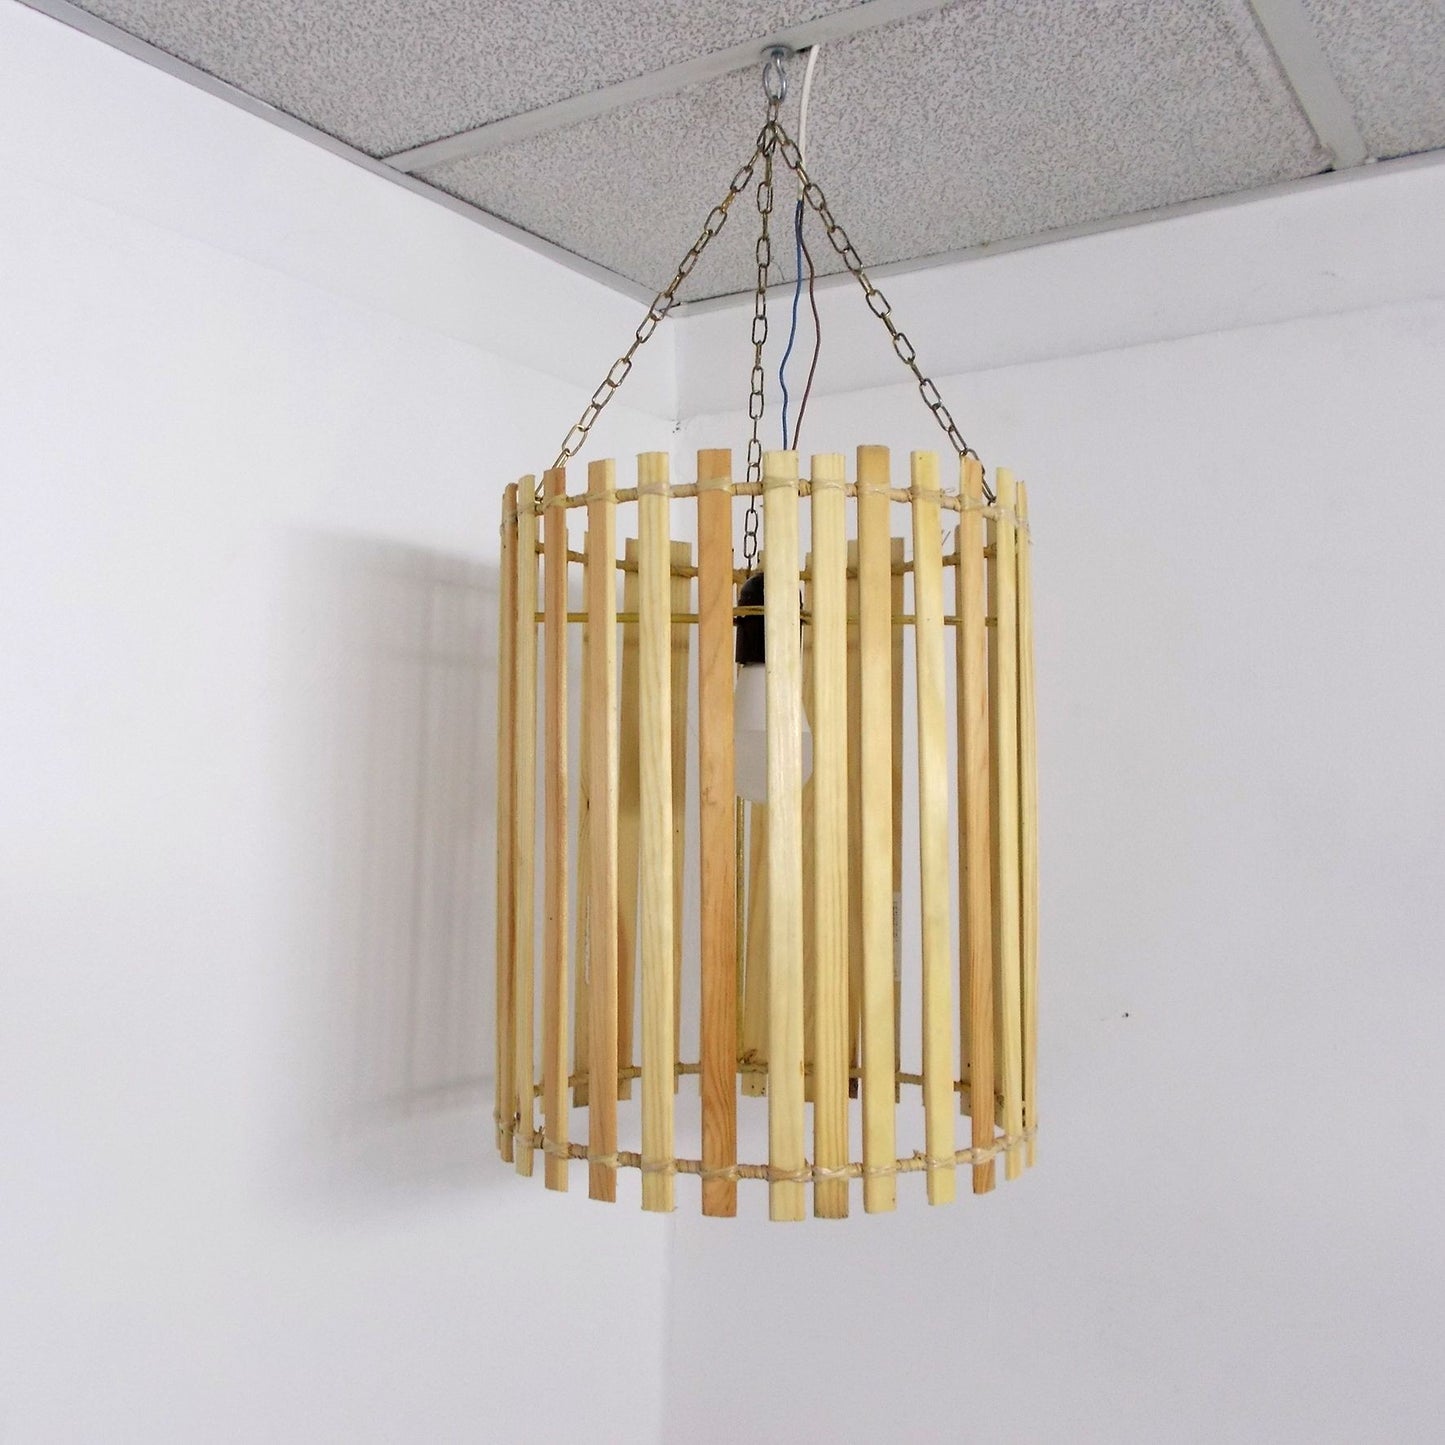 Etnisch meubilair Marokkaanse Kroonluchter Lamp bamboe Ophanging 0503191150